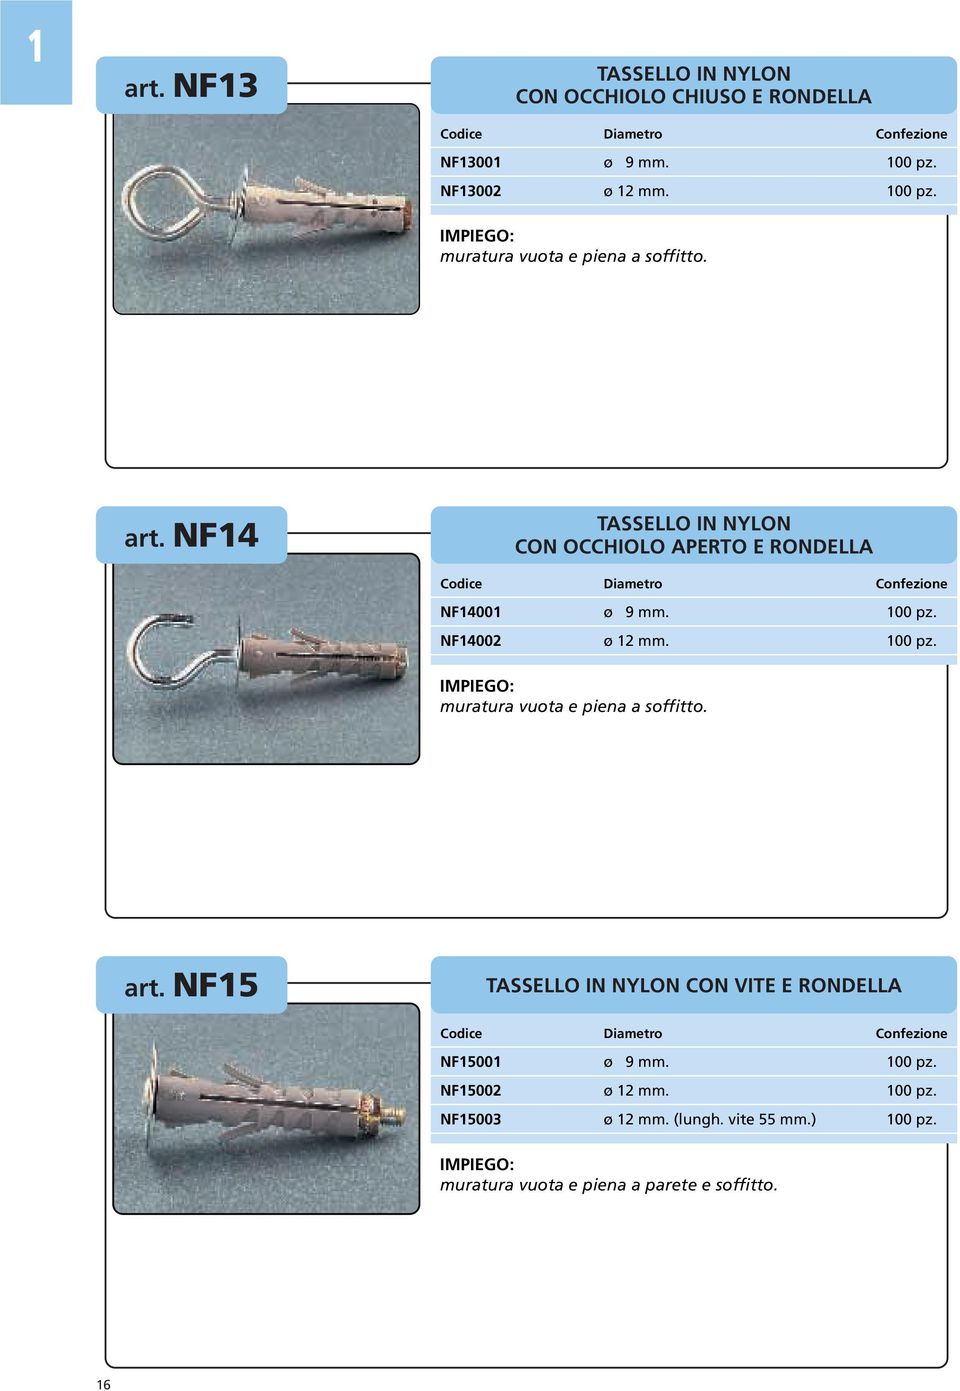 NF14 TASSELLO IN NYLON CON OCCHIOLO APERTO E RONDELLA Codice Diametro Confezione NF14001 ø 9 mm. 100 pz. NF14002 ø 12 mm. 100 pz. muratura vuota e piena a soffitto.